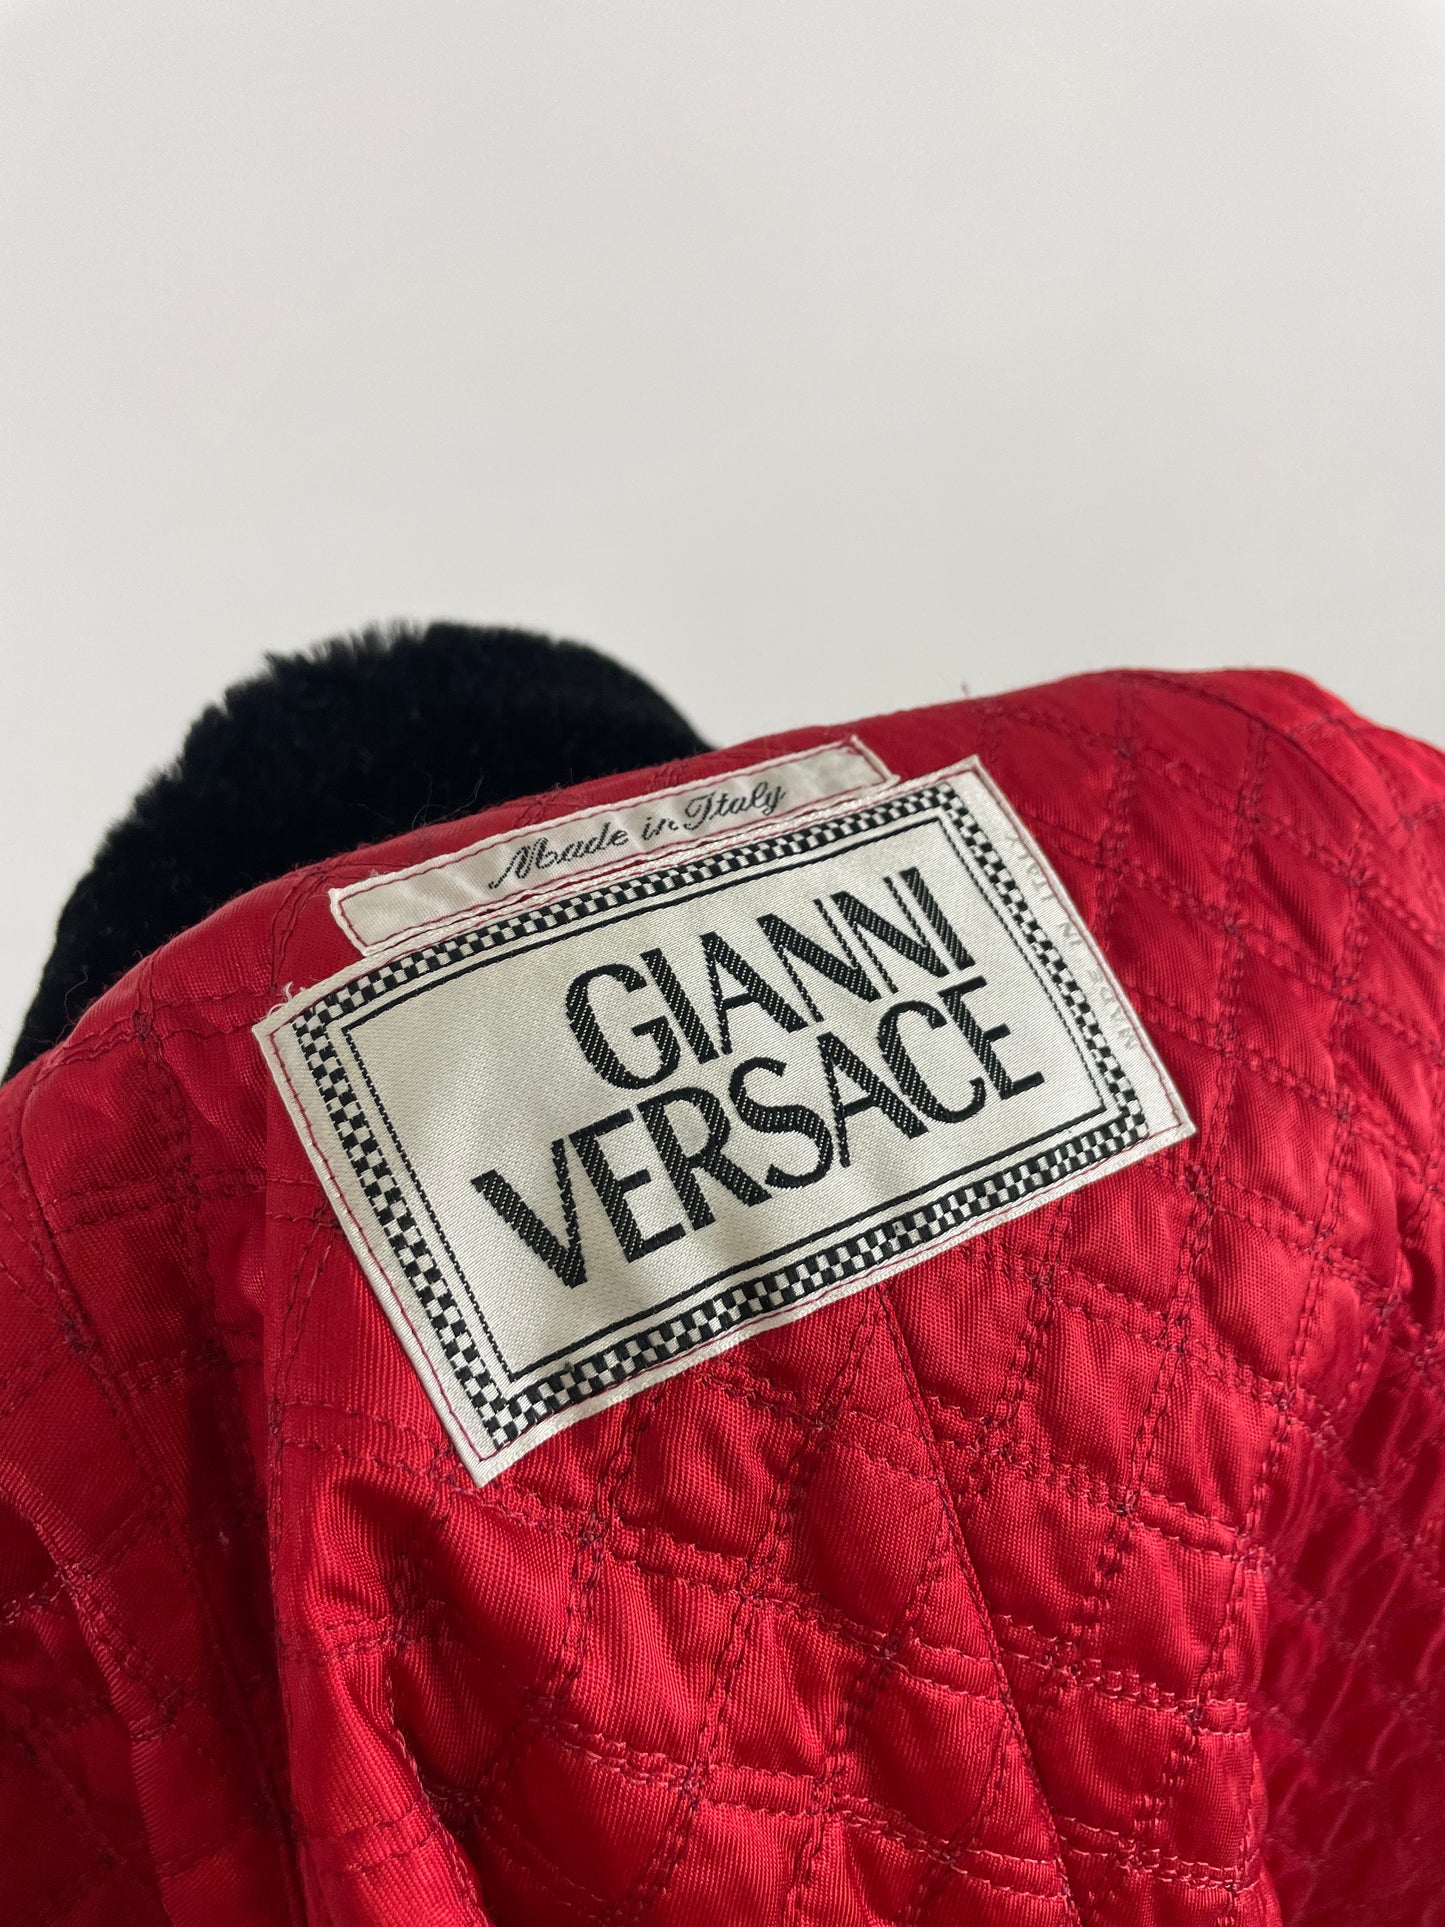 Gianni Versace coat 1990s